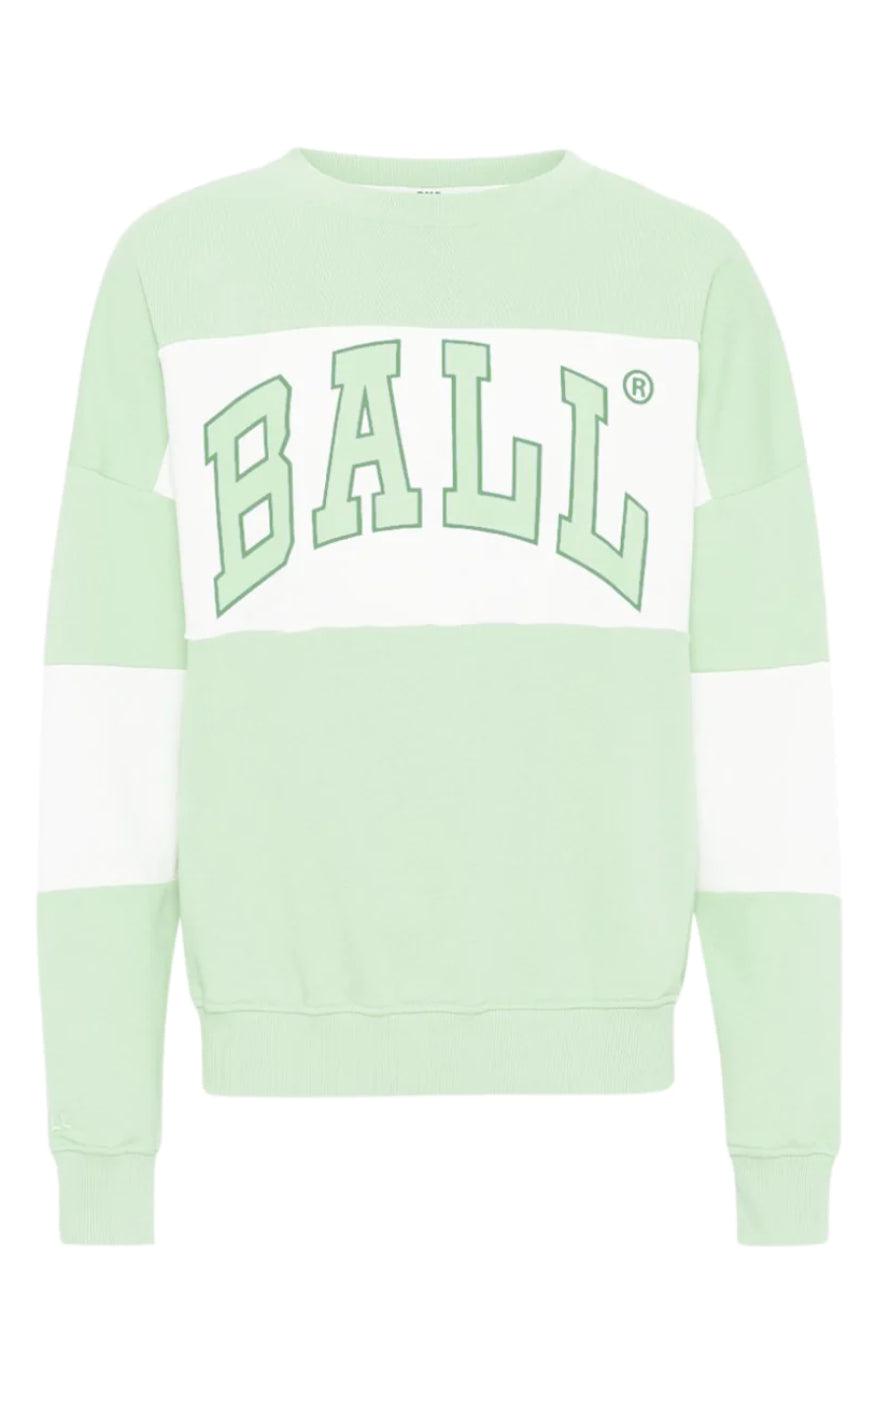 Se BALL Original Sweatshirt - J. Robinson - Neo Mint hos Fashionbystrand